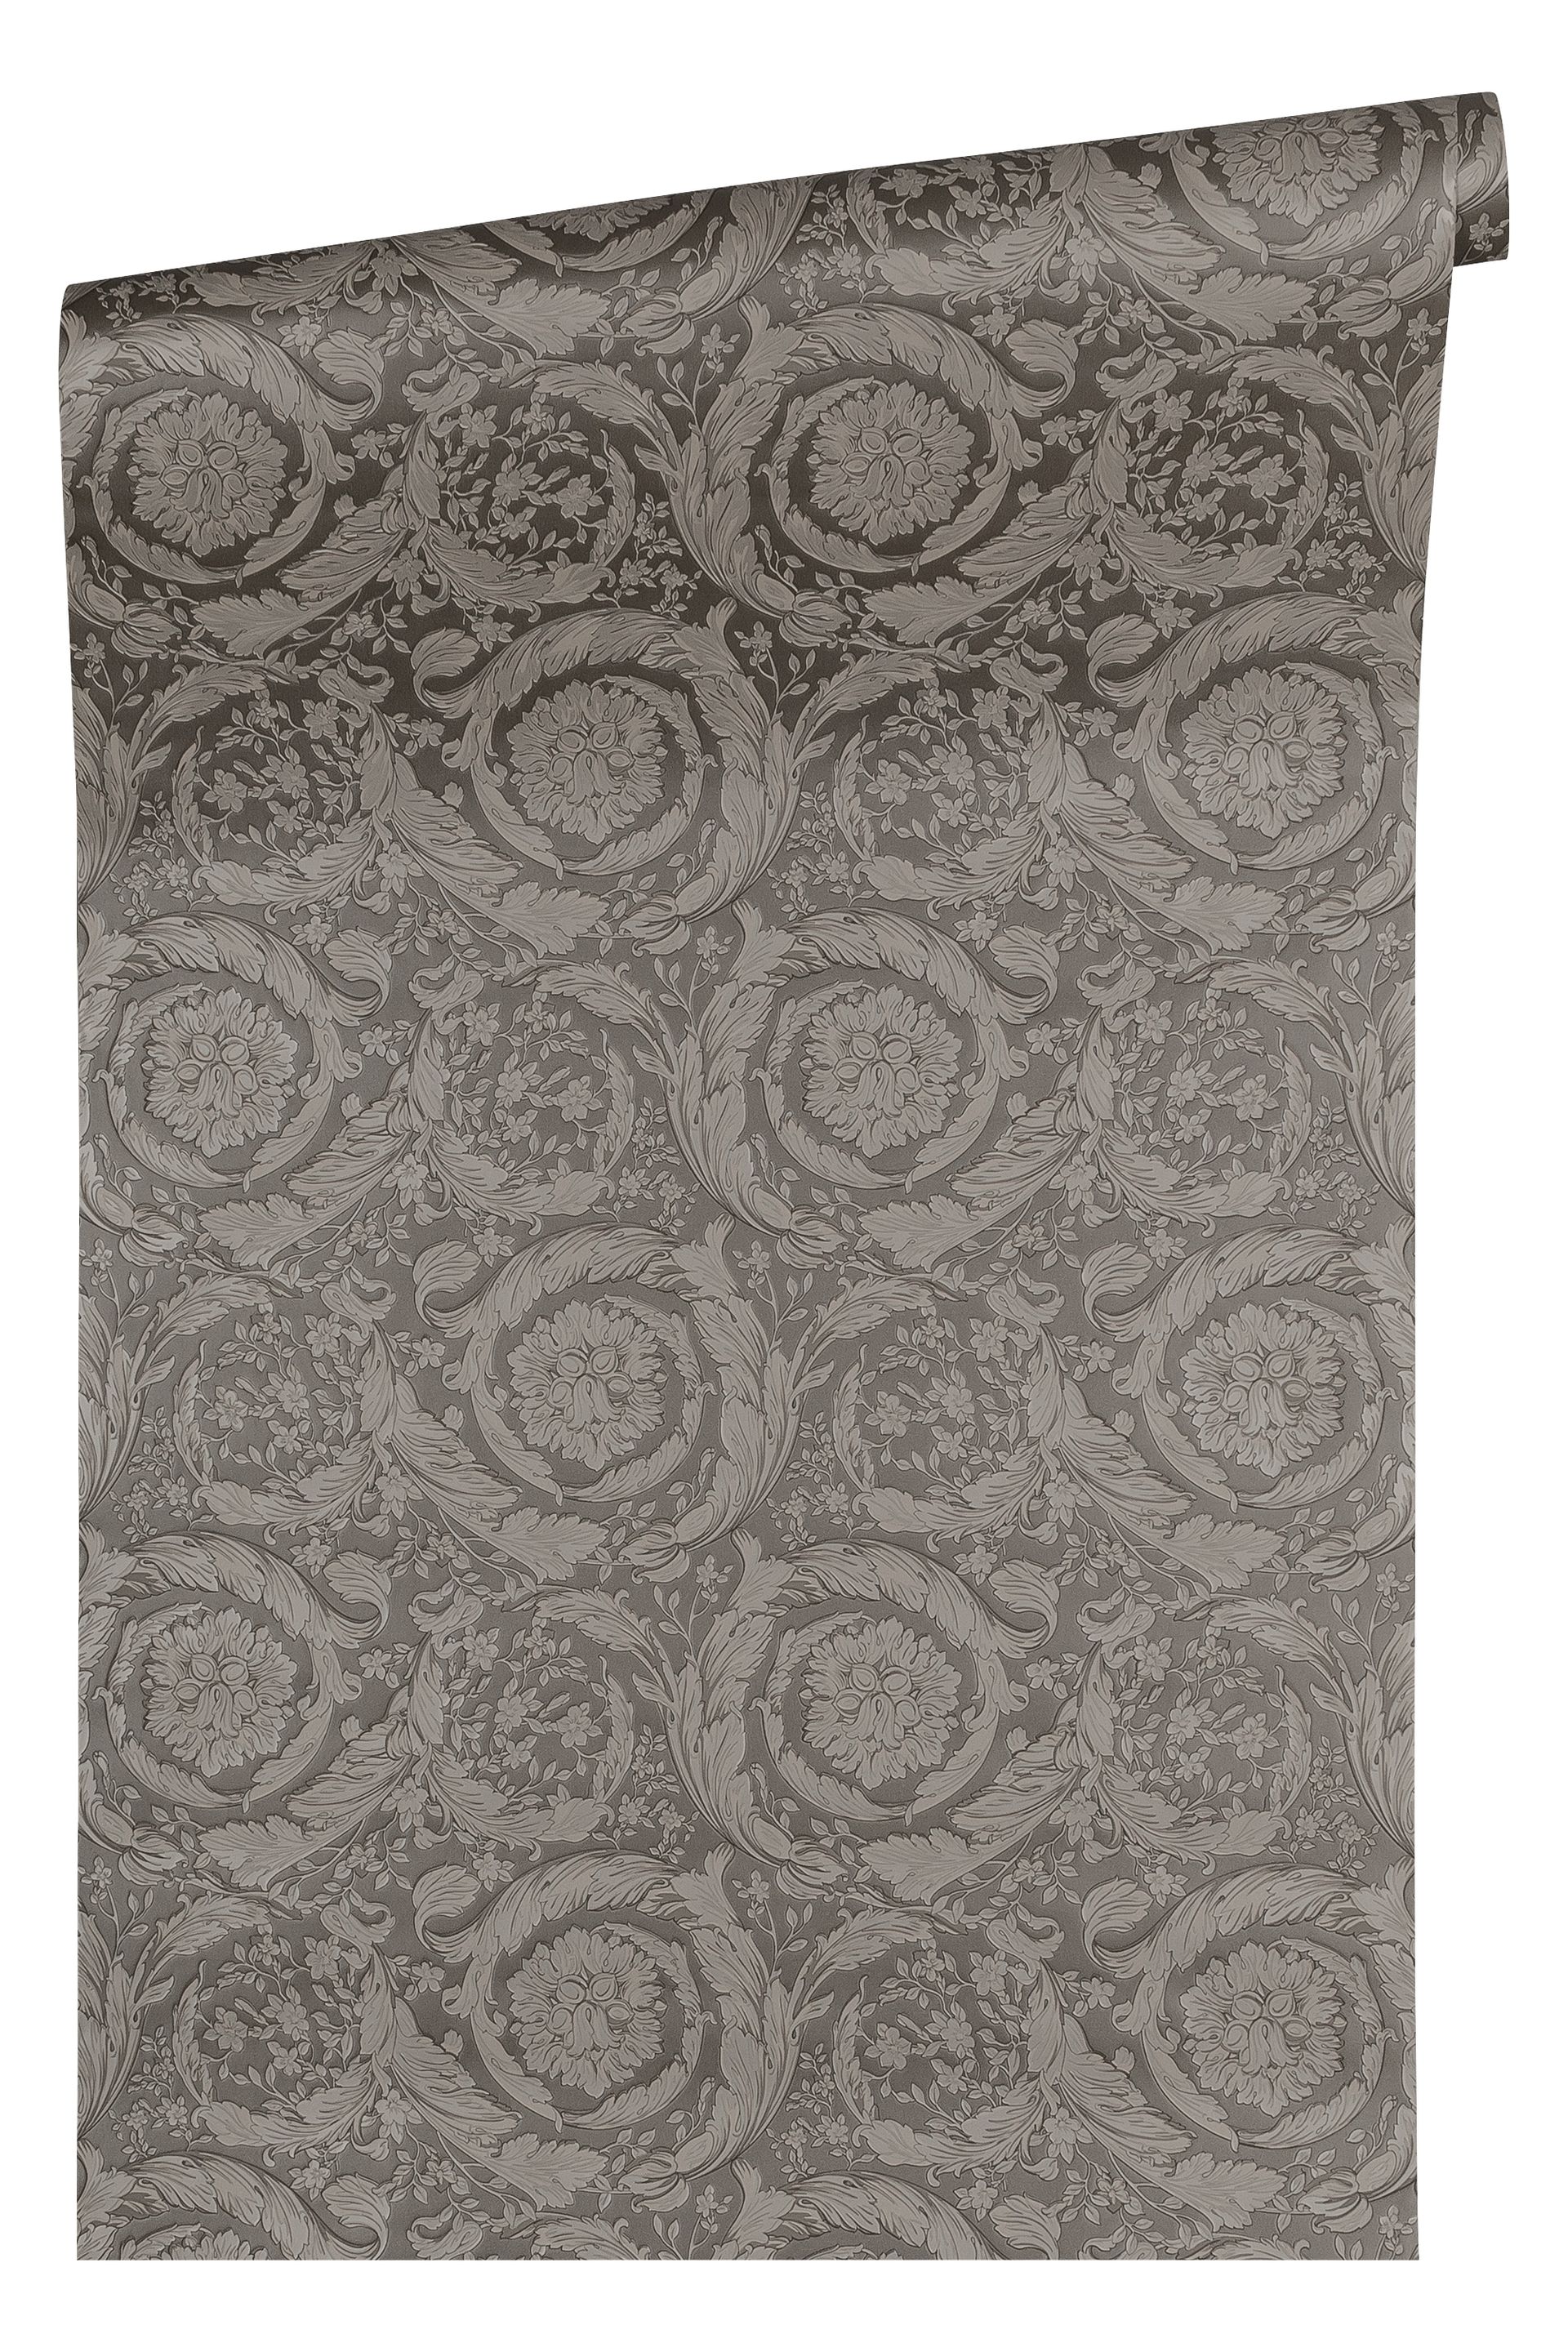 Versace wallpaper Versace 3, Design Tapete, silber, grau 935836